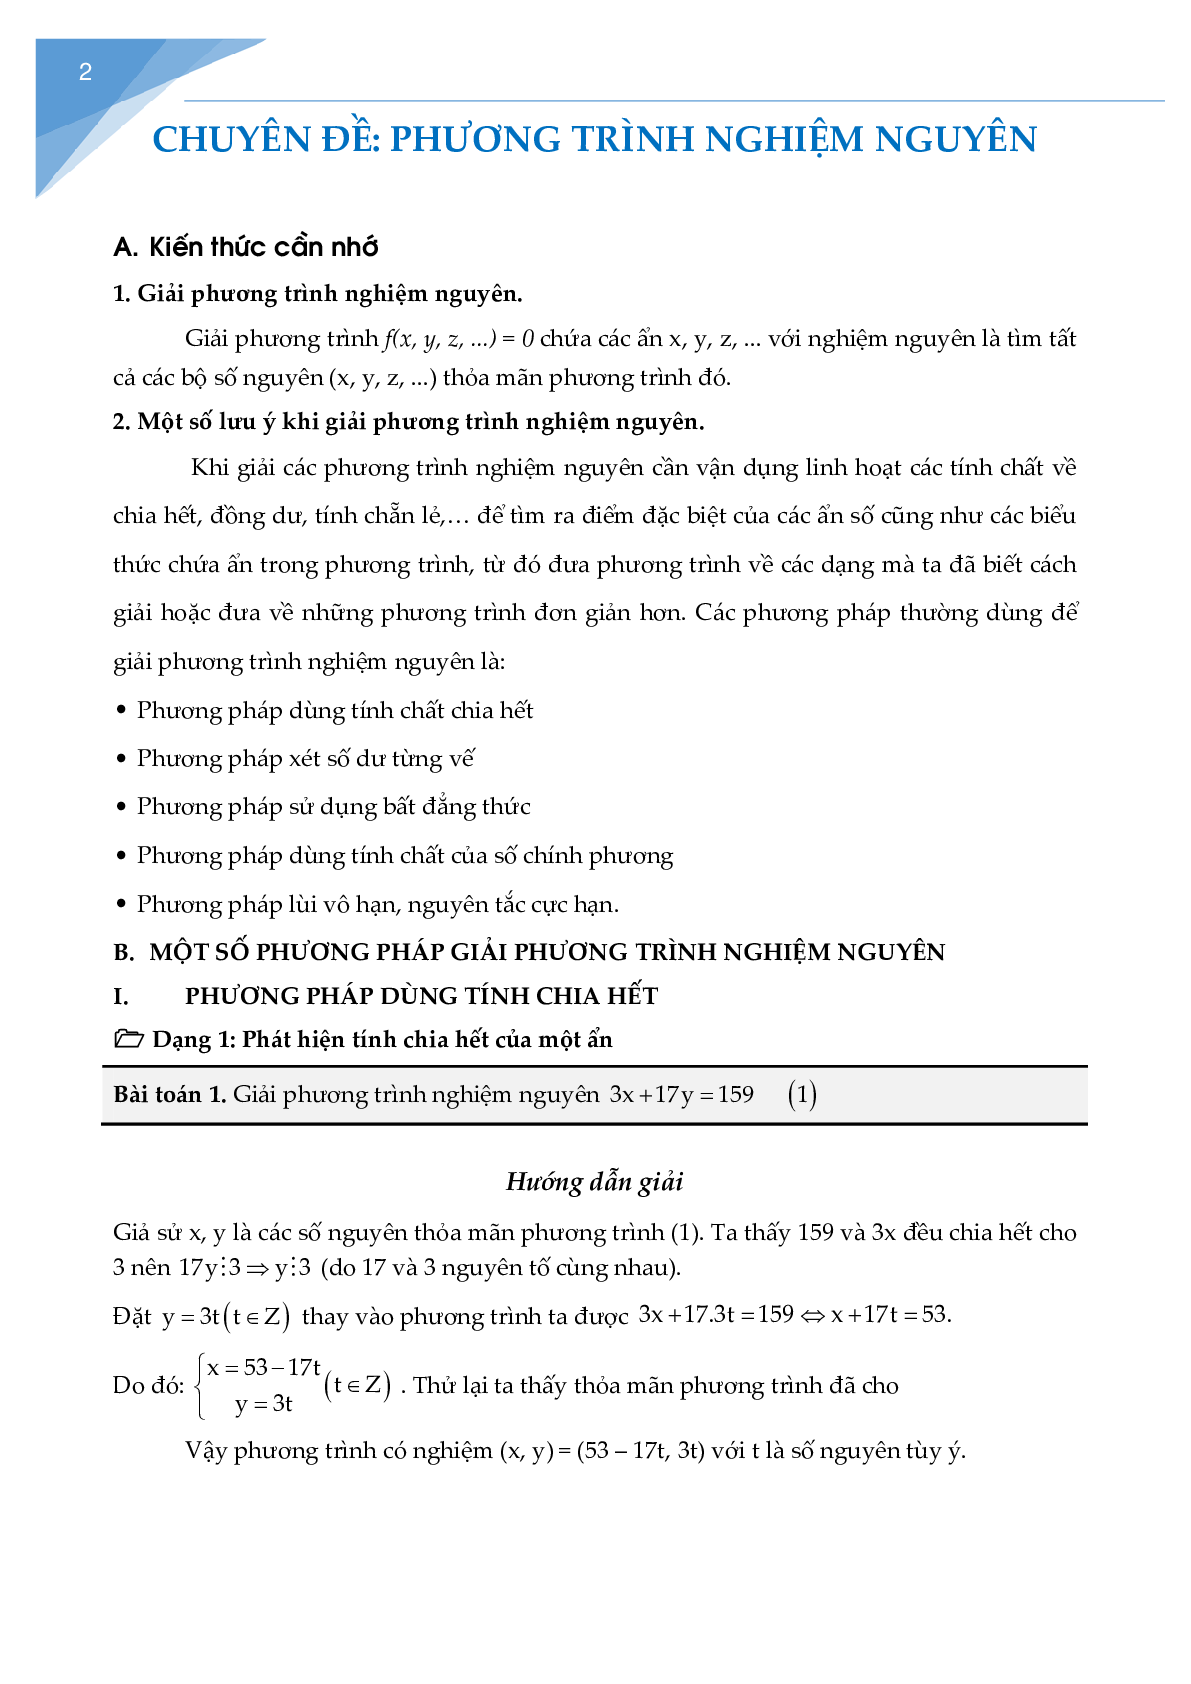 Chuyên đề phương trình nghiệm nguyên (trang 1)